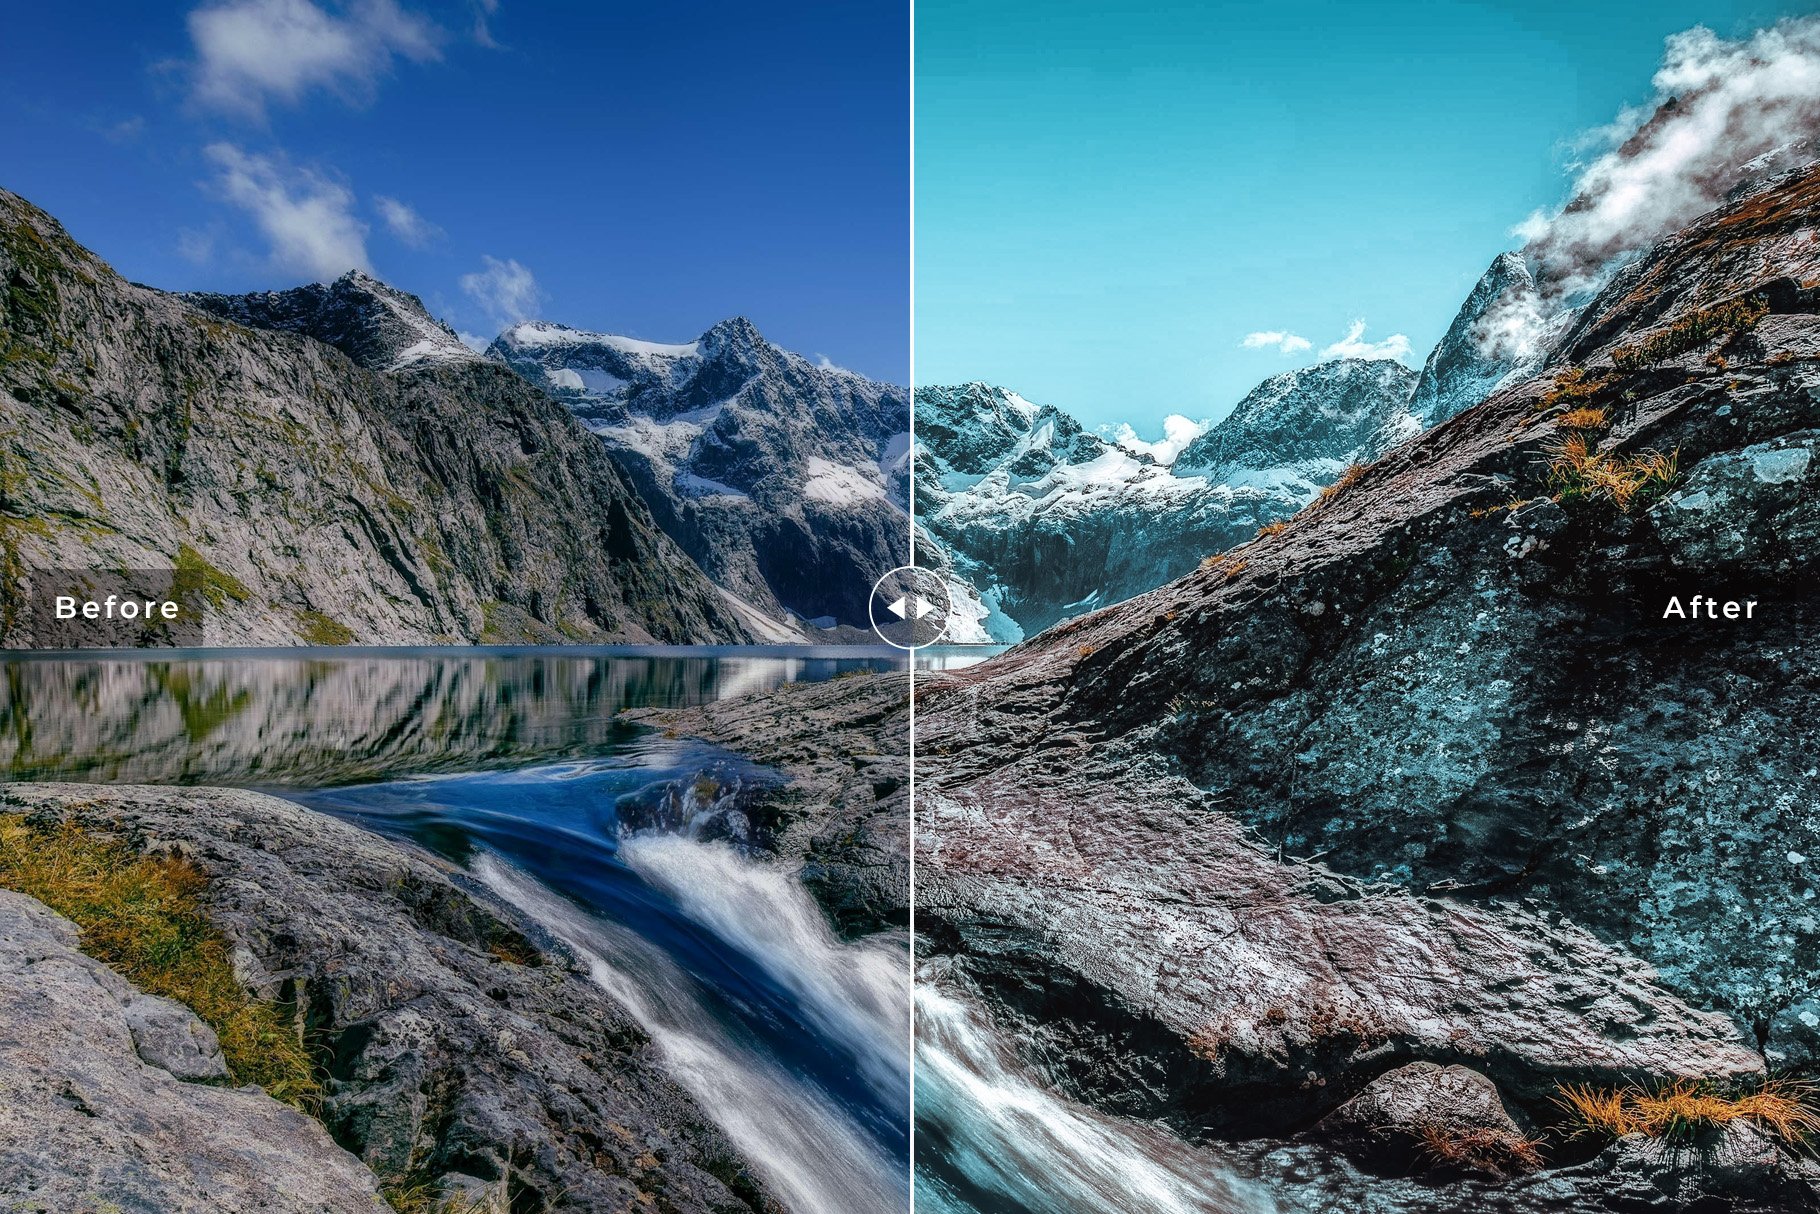 青绿调高质量室外旅行旅拍风景景观旅行度假LR调色预设 Fiordland Pro Lightroom Presets